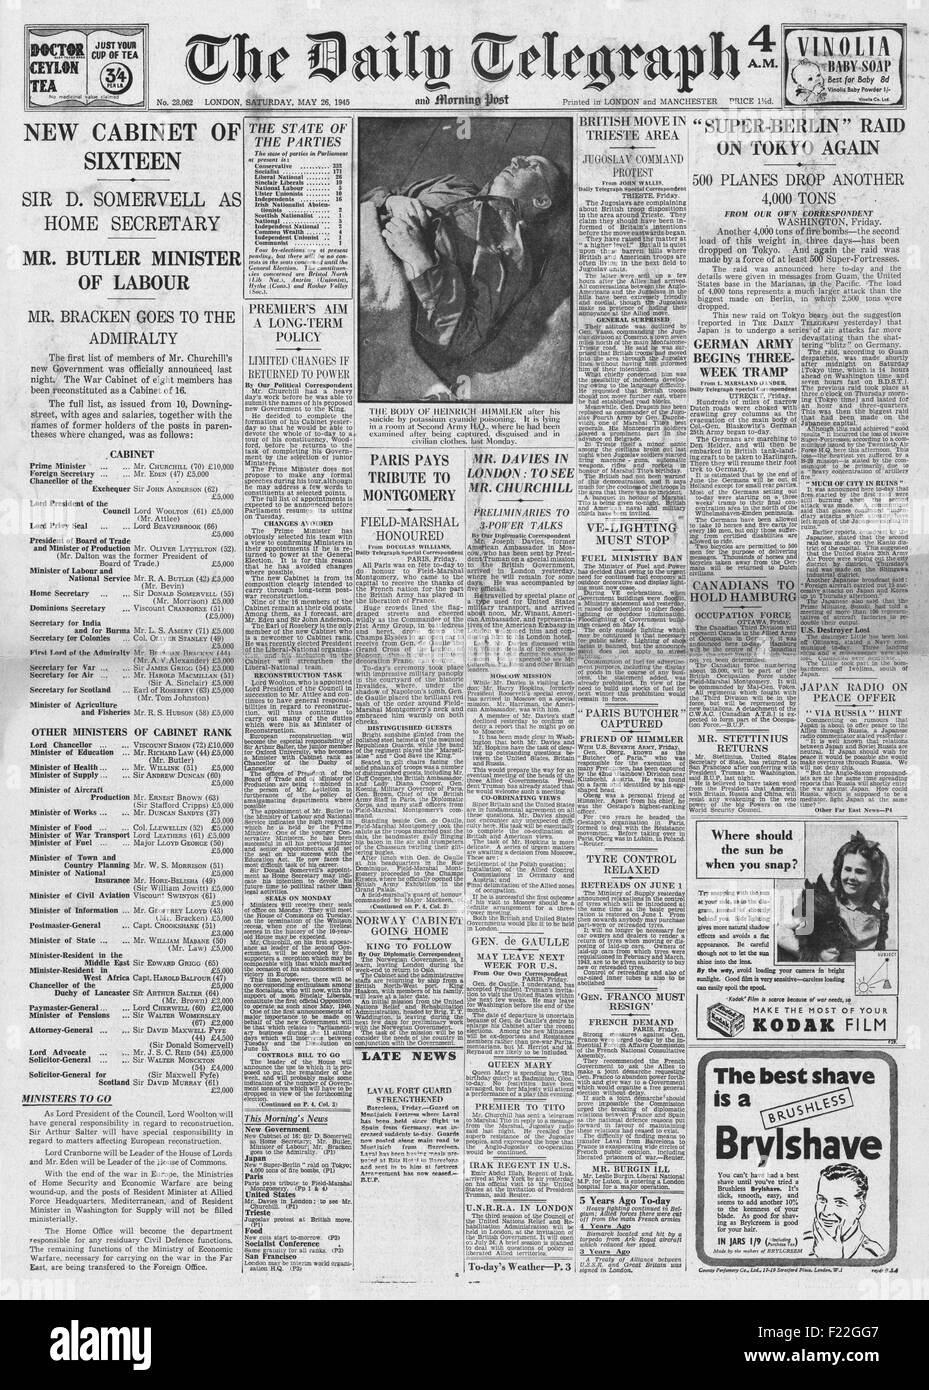 1945 Daily Telegraph front page reporting Heinrich Himmler suicida mentre nella custodia britannica, Churchill annuncia il nuovo governo ad interim e US Airforce bomba Tokyo Foto Stock